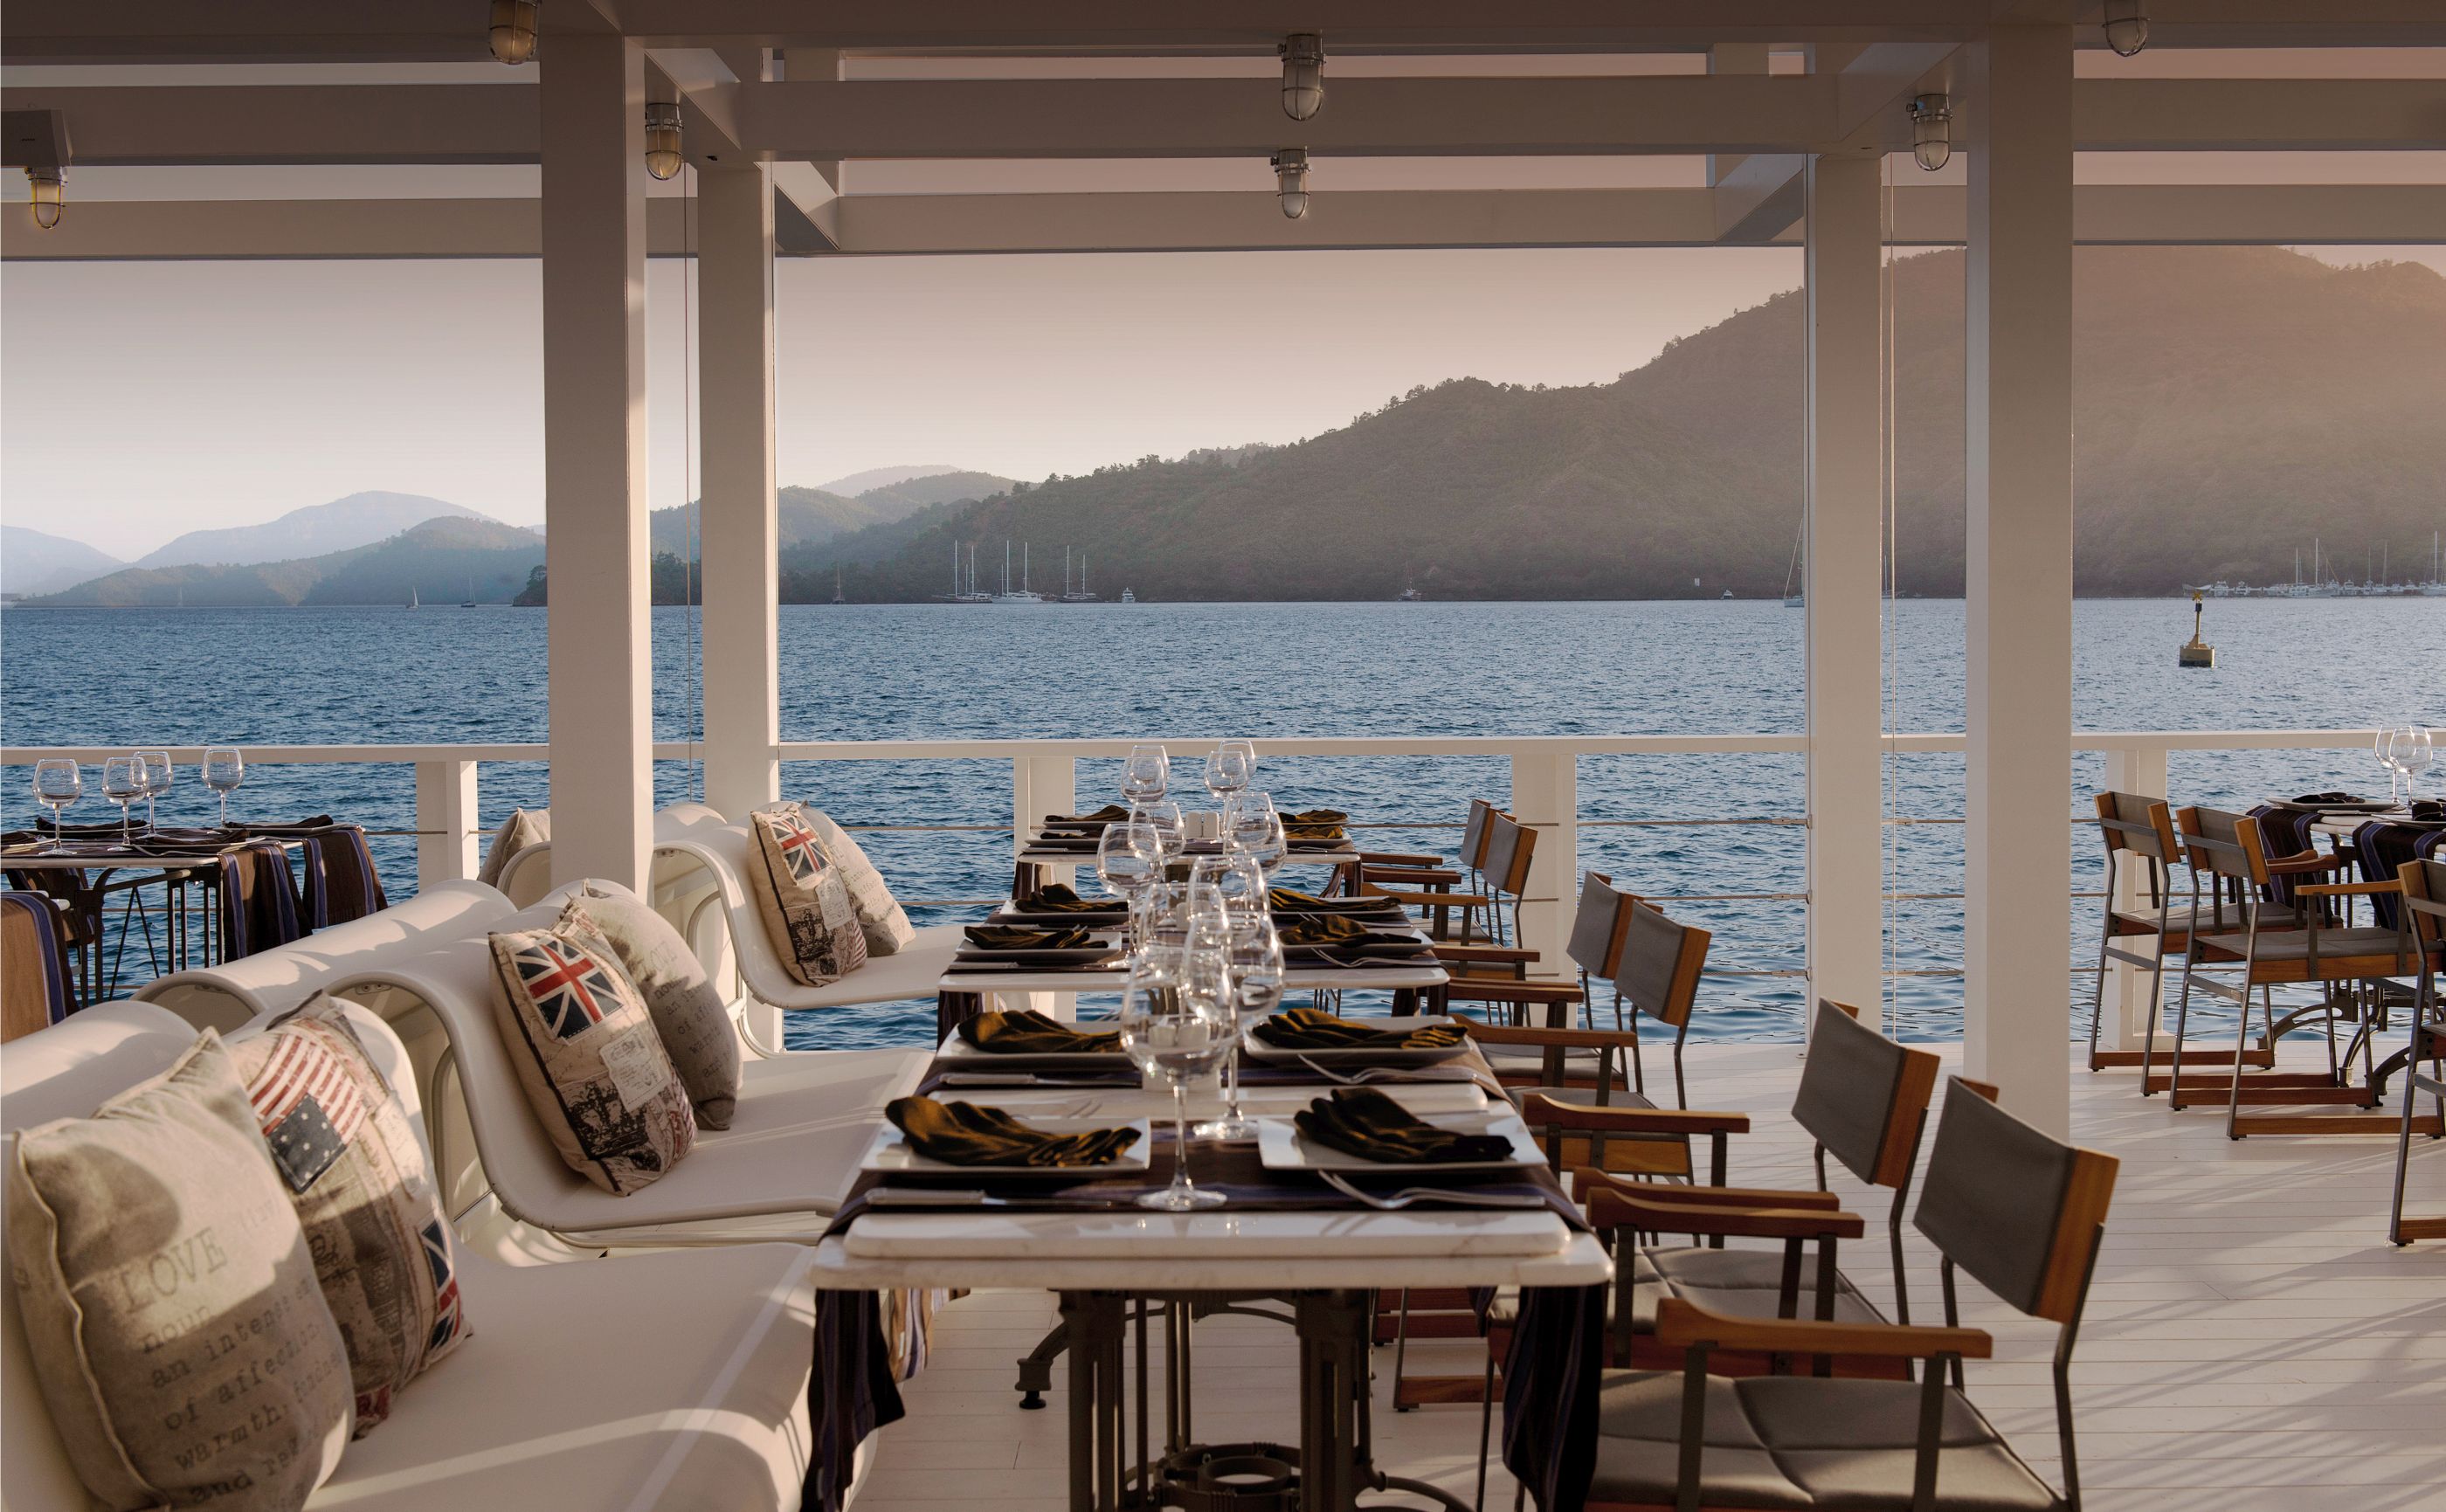 Restaurant with sea view at D-Resort Gocek, Turkey